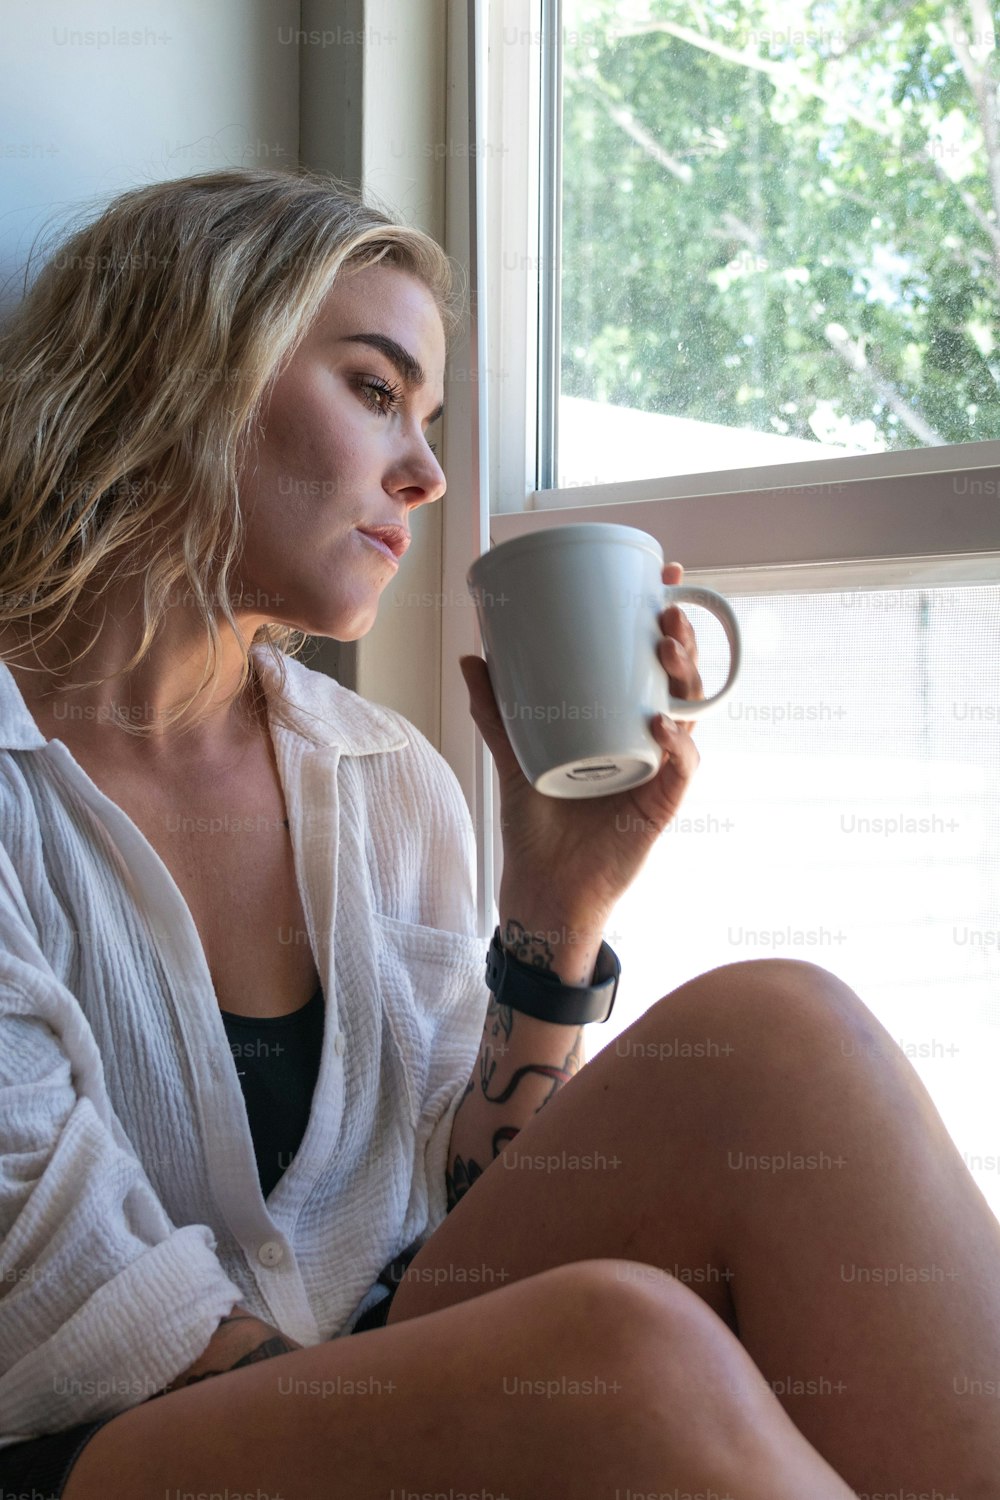 창틀에 앉아 커피잔을 들고 있는 여자